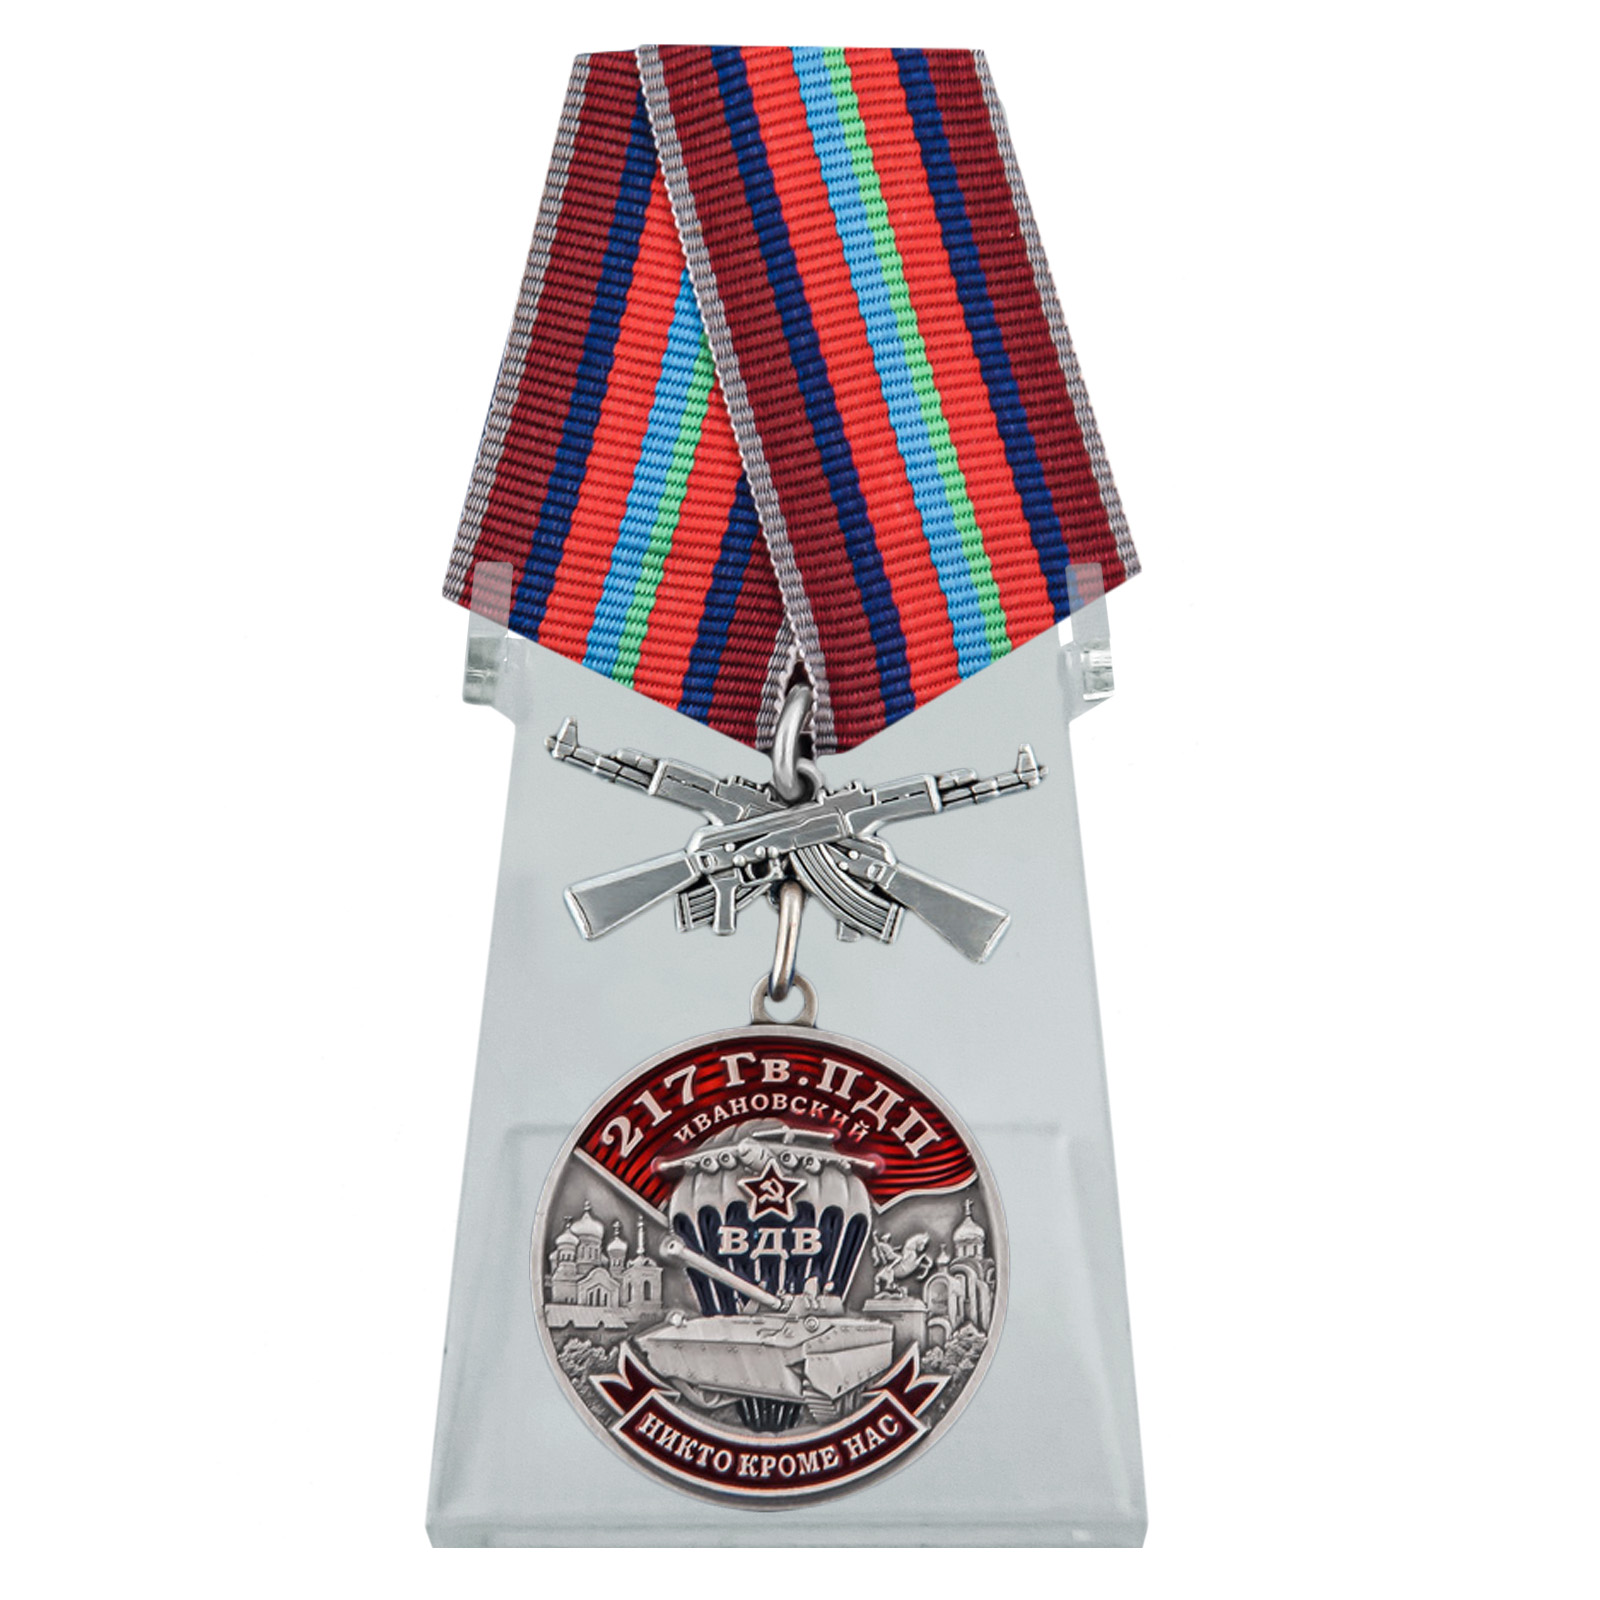 Медаль "217 Гв. ПДП" на подставке